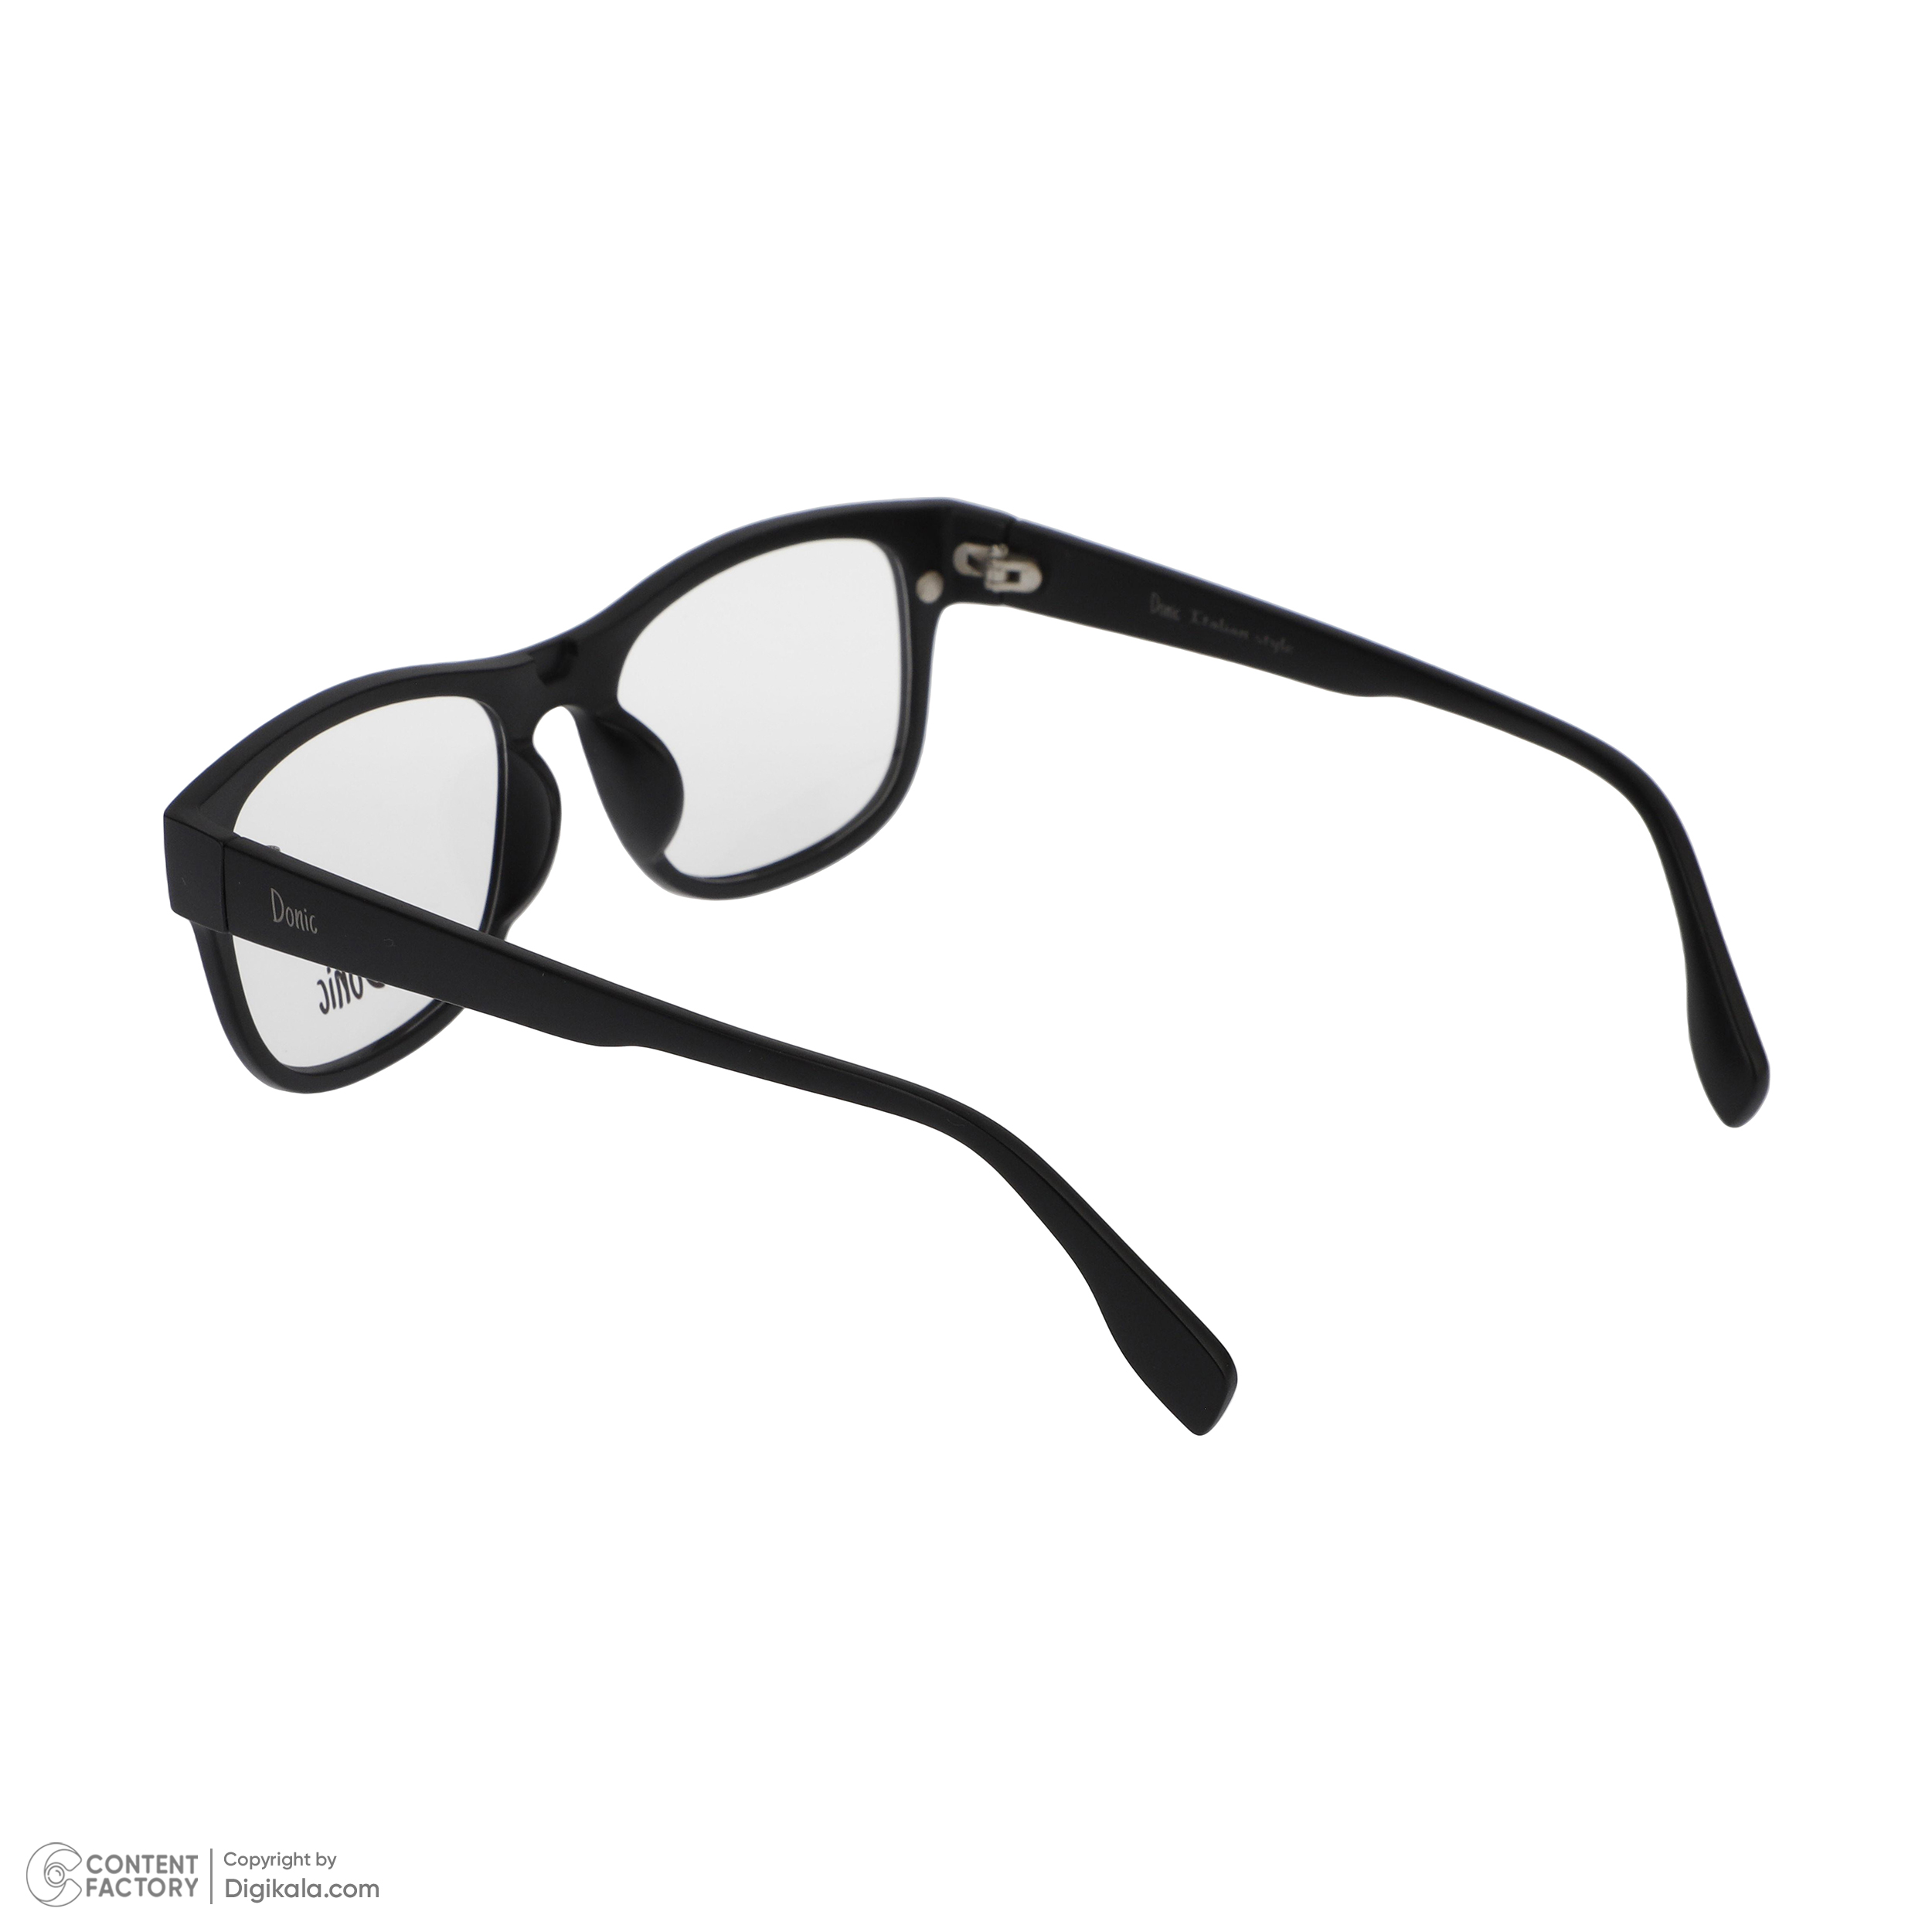 فریم عینک طبی دونیک مدل tr2203-c2 به همراه کاور آفتابی مجموعه 6 عددی -  - 6